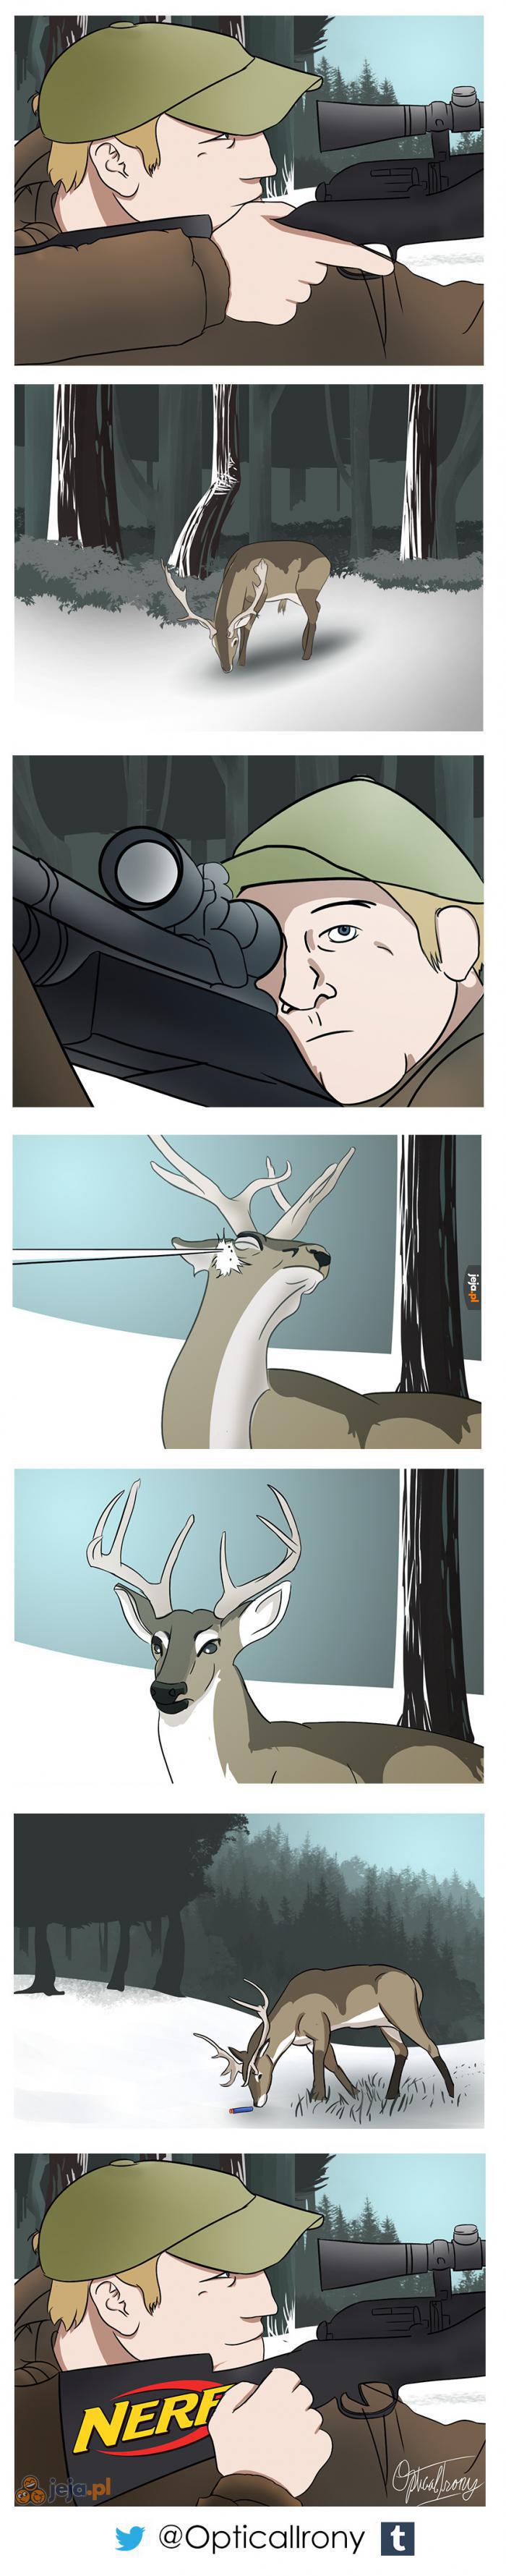 Krótki komiks o polowaniu